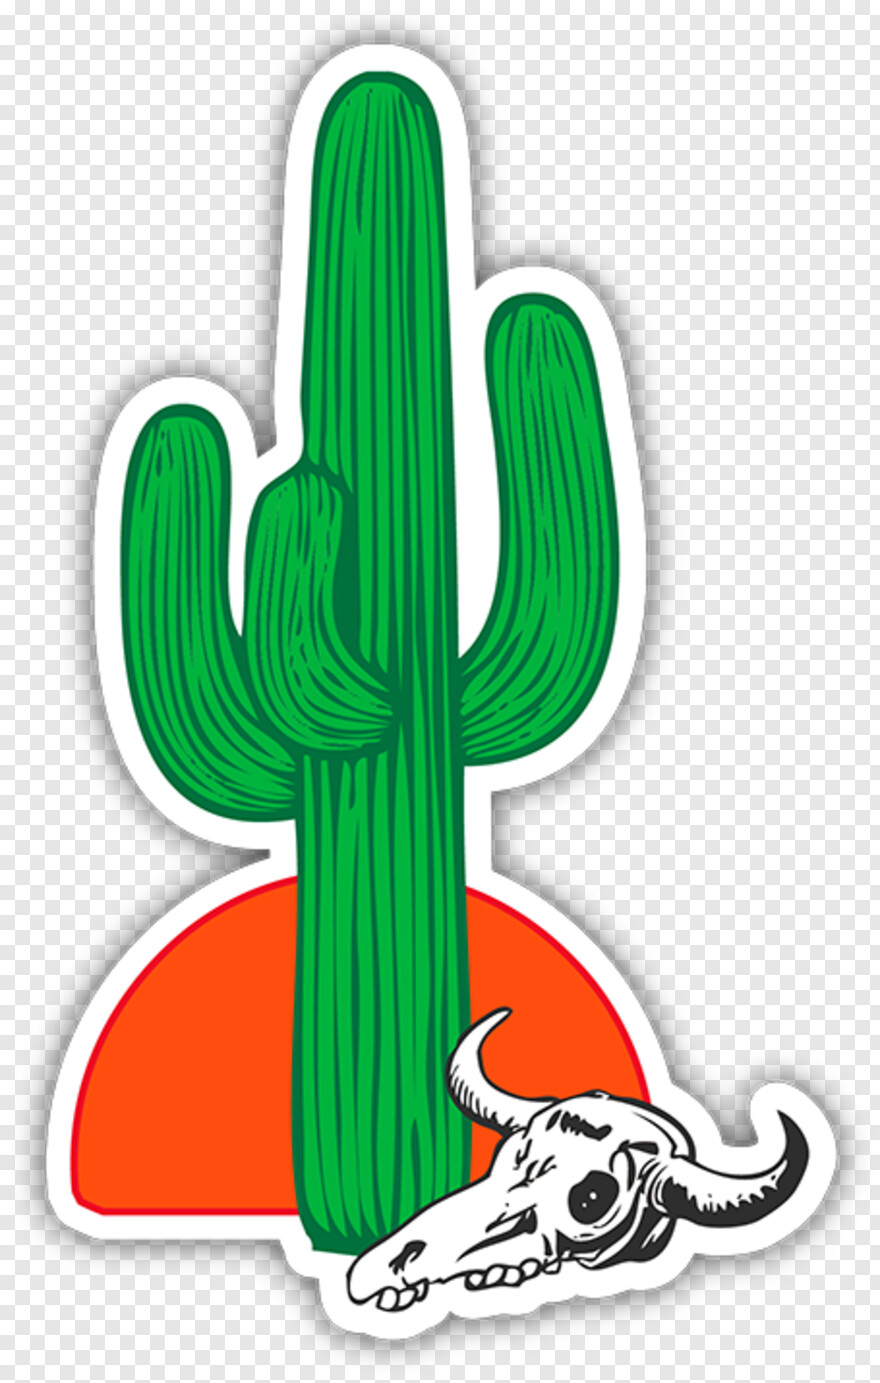 cactus-clipart # 1101357